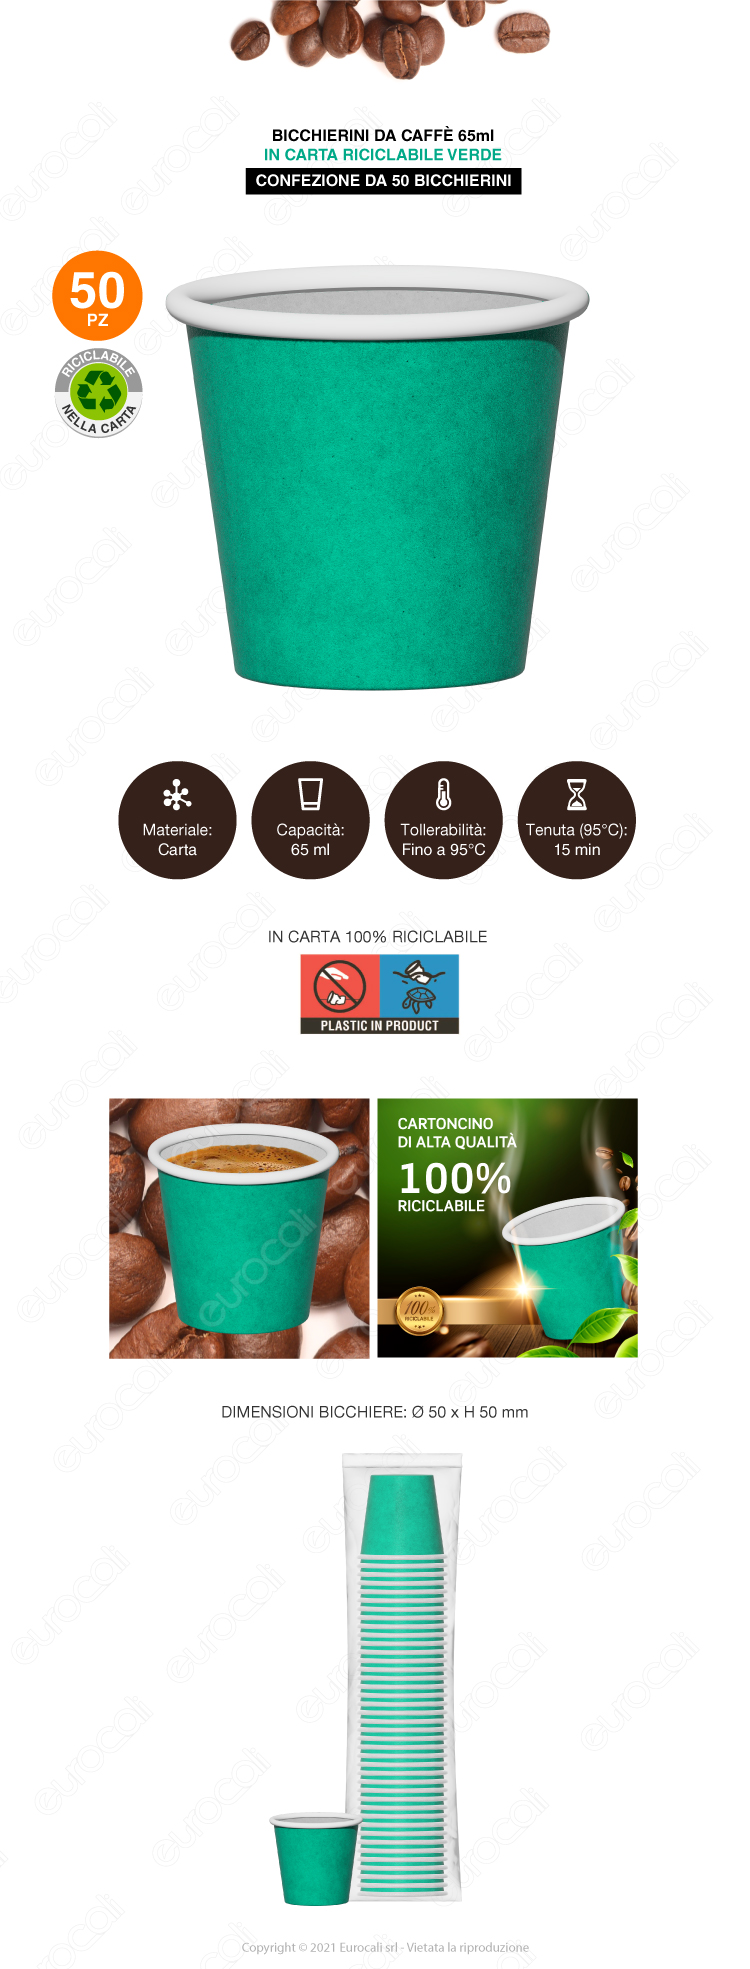 biccheri caffè in carta verde 50x coffee